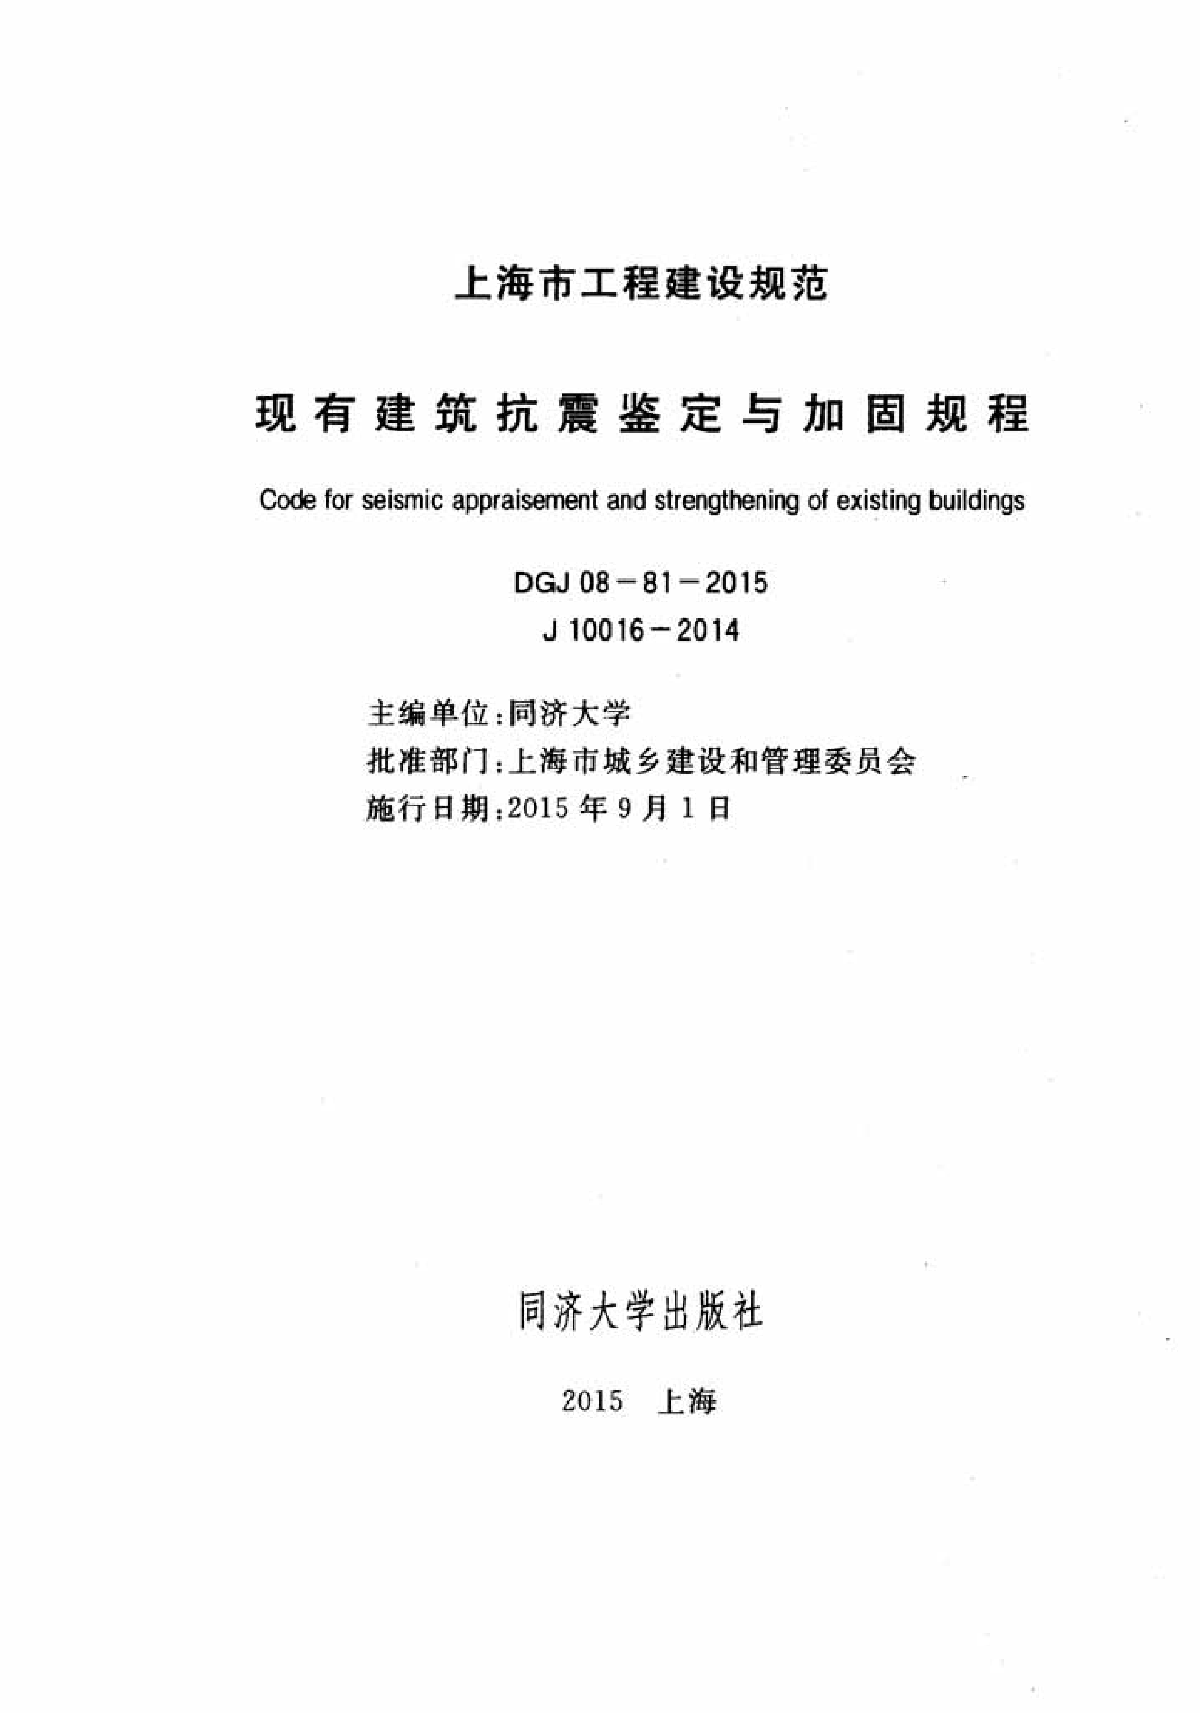 DGJ 08-81-2015 现有建筑抗震鉴定与加固规程（最新发布）-图二